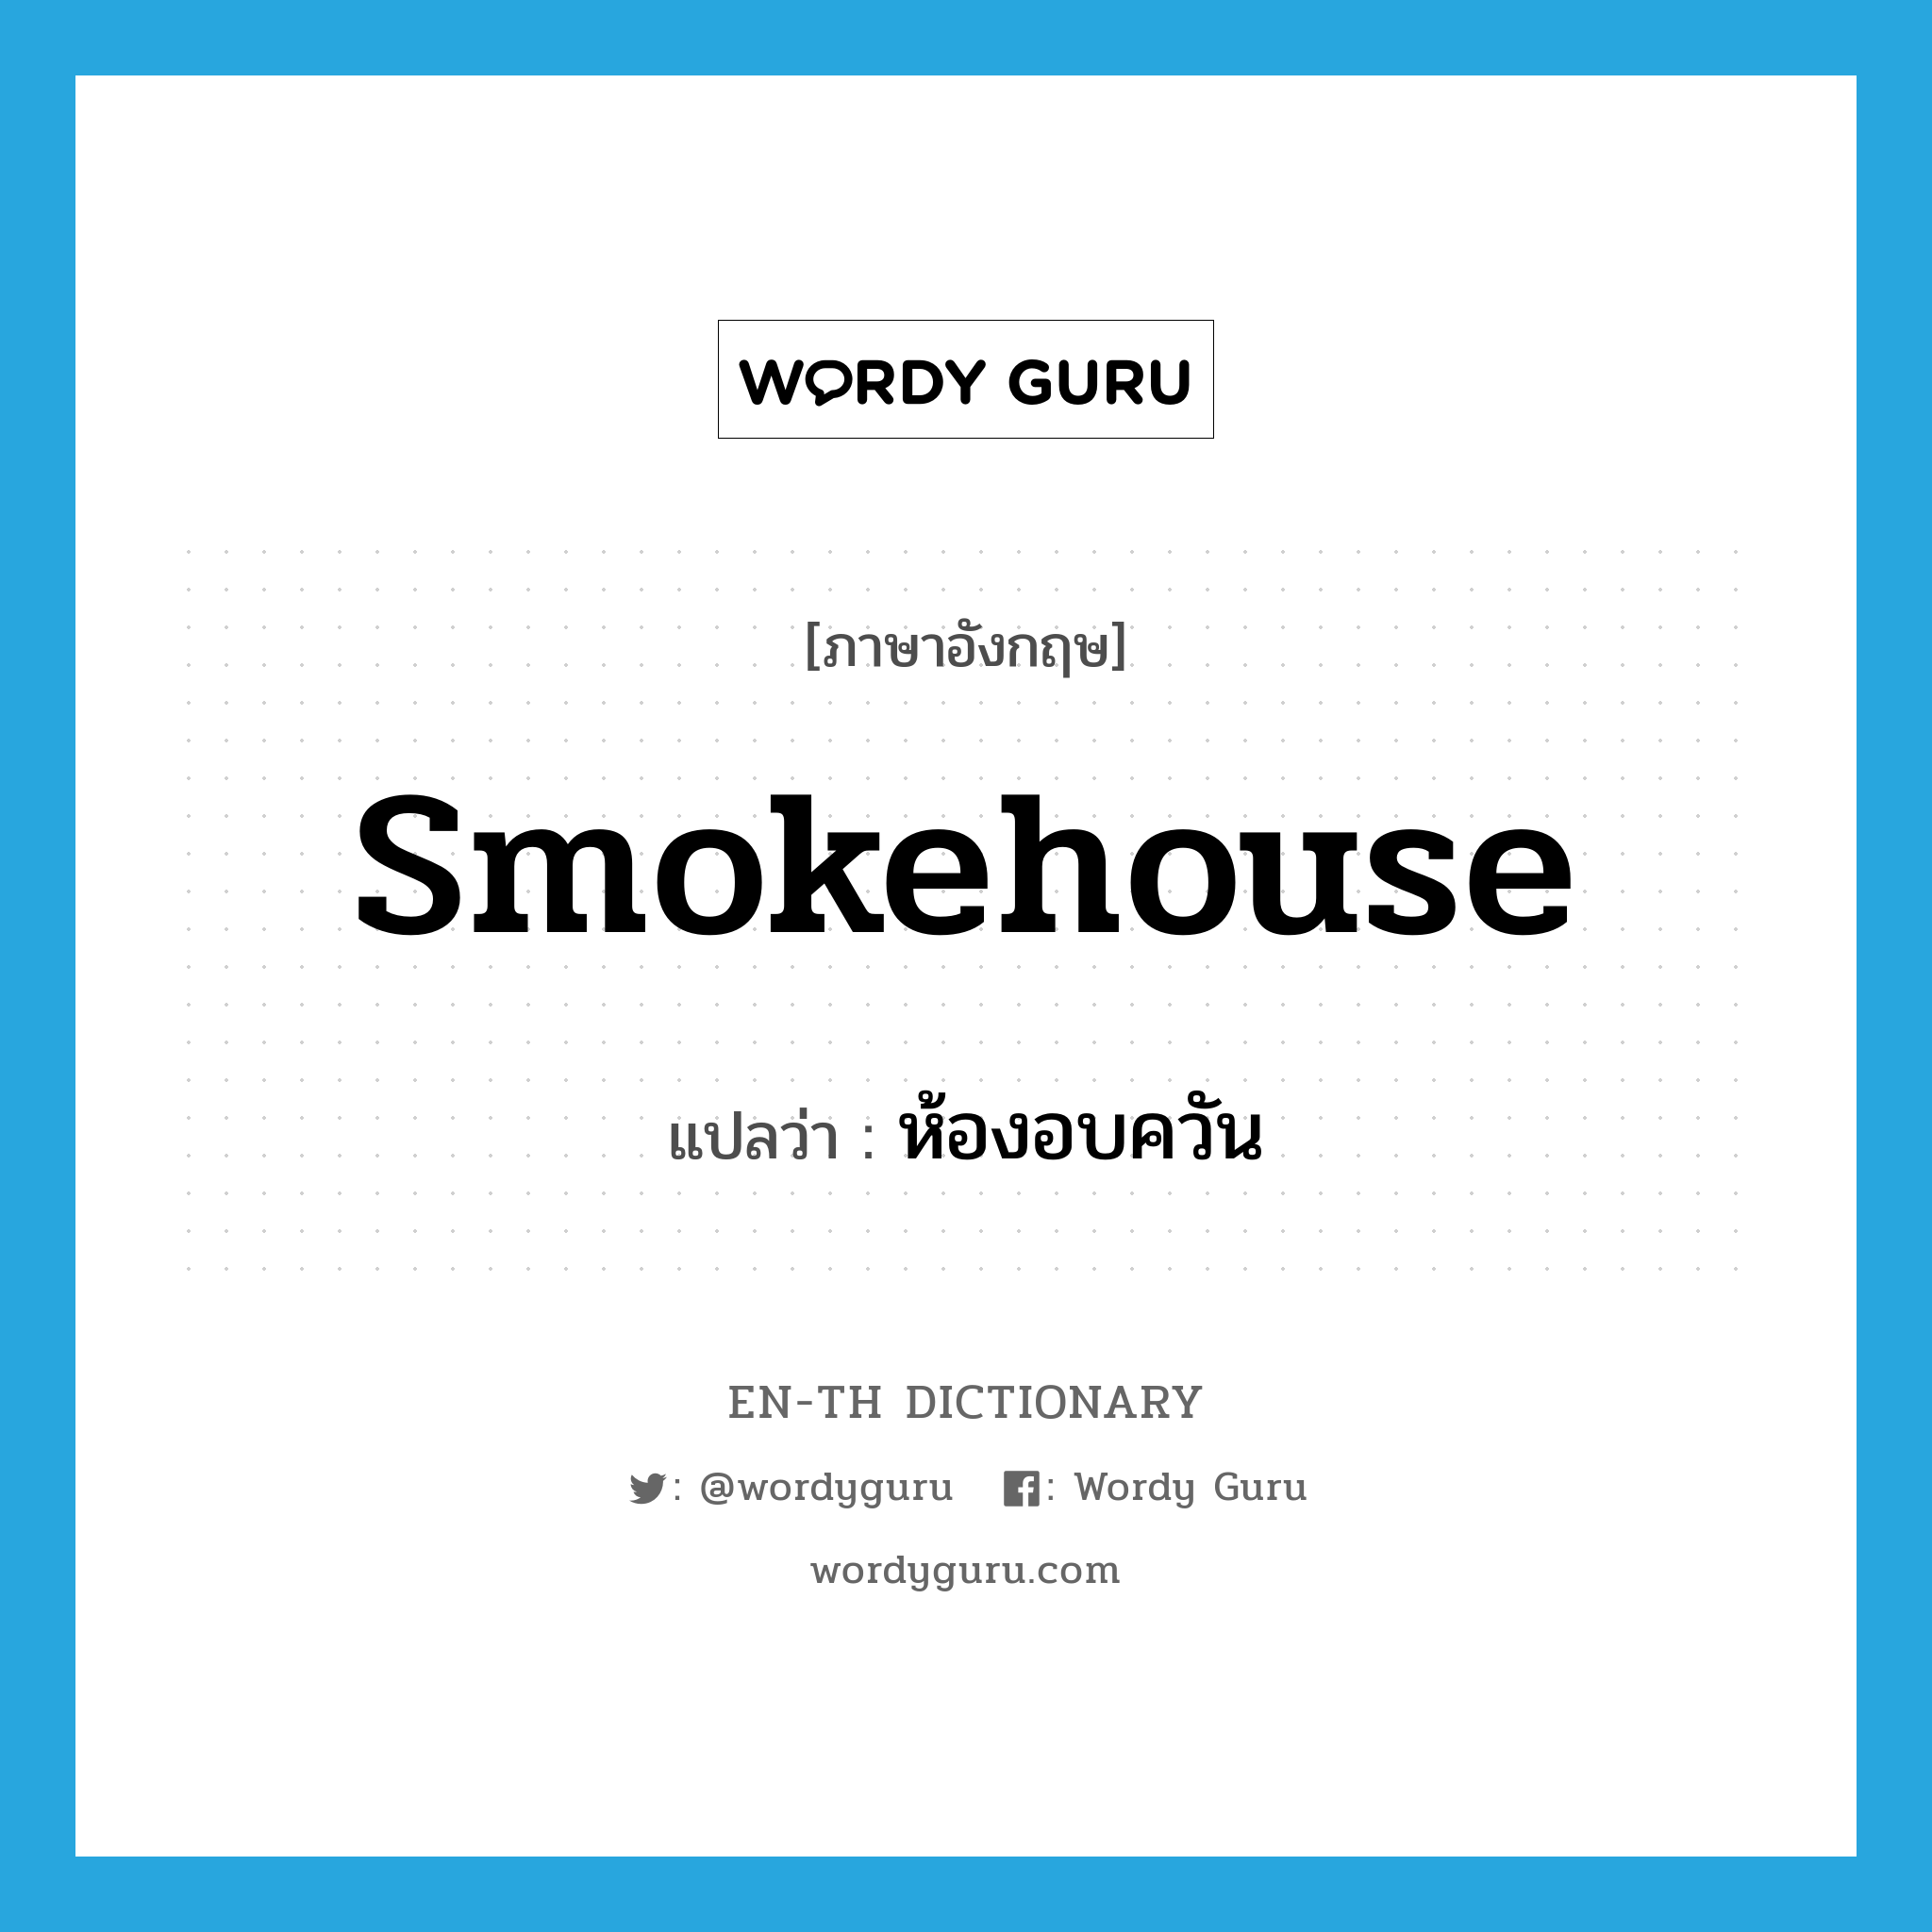 smokehouse แปลว่า?, คำศัพท์ภาษาอังกฤษ smokehouse แปลว่า ห้องอบควัน ประเภท N หมวด N